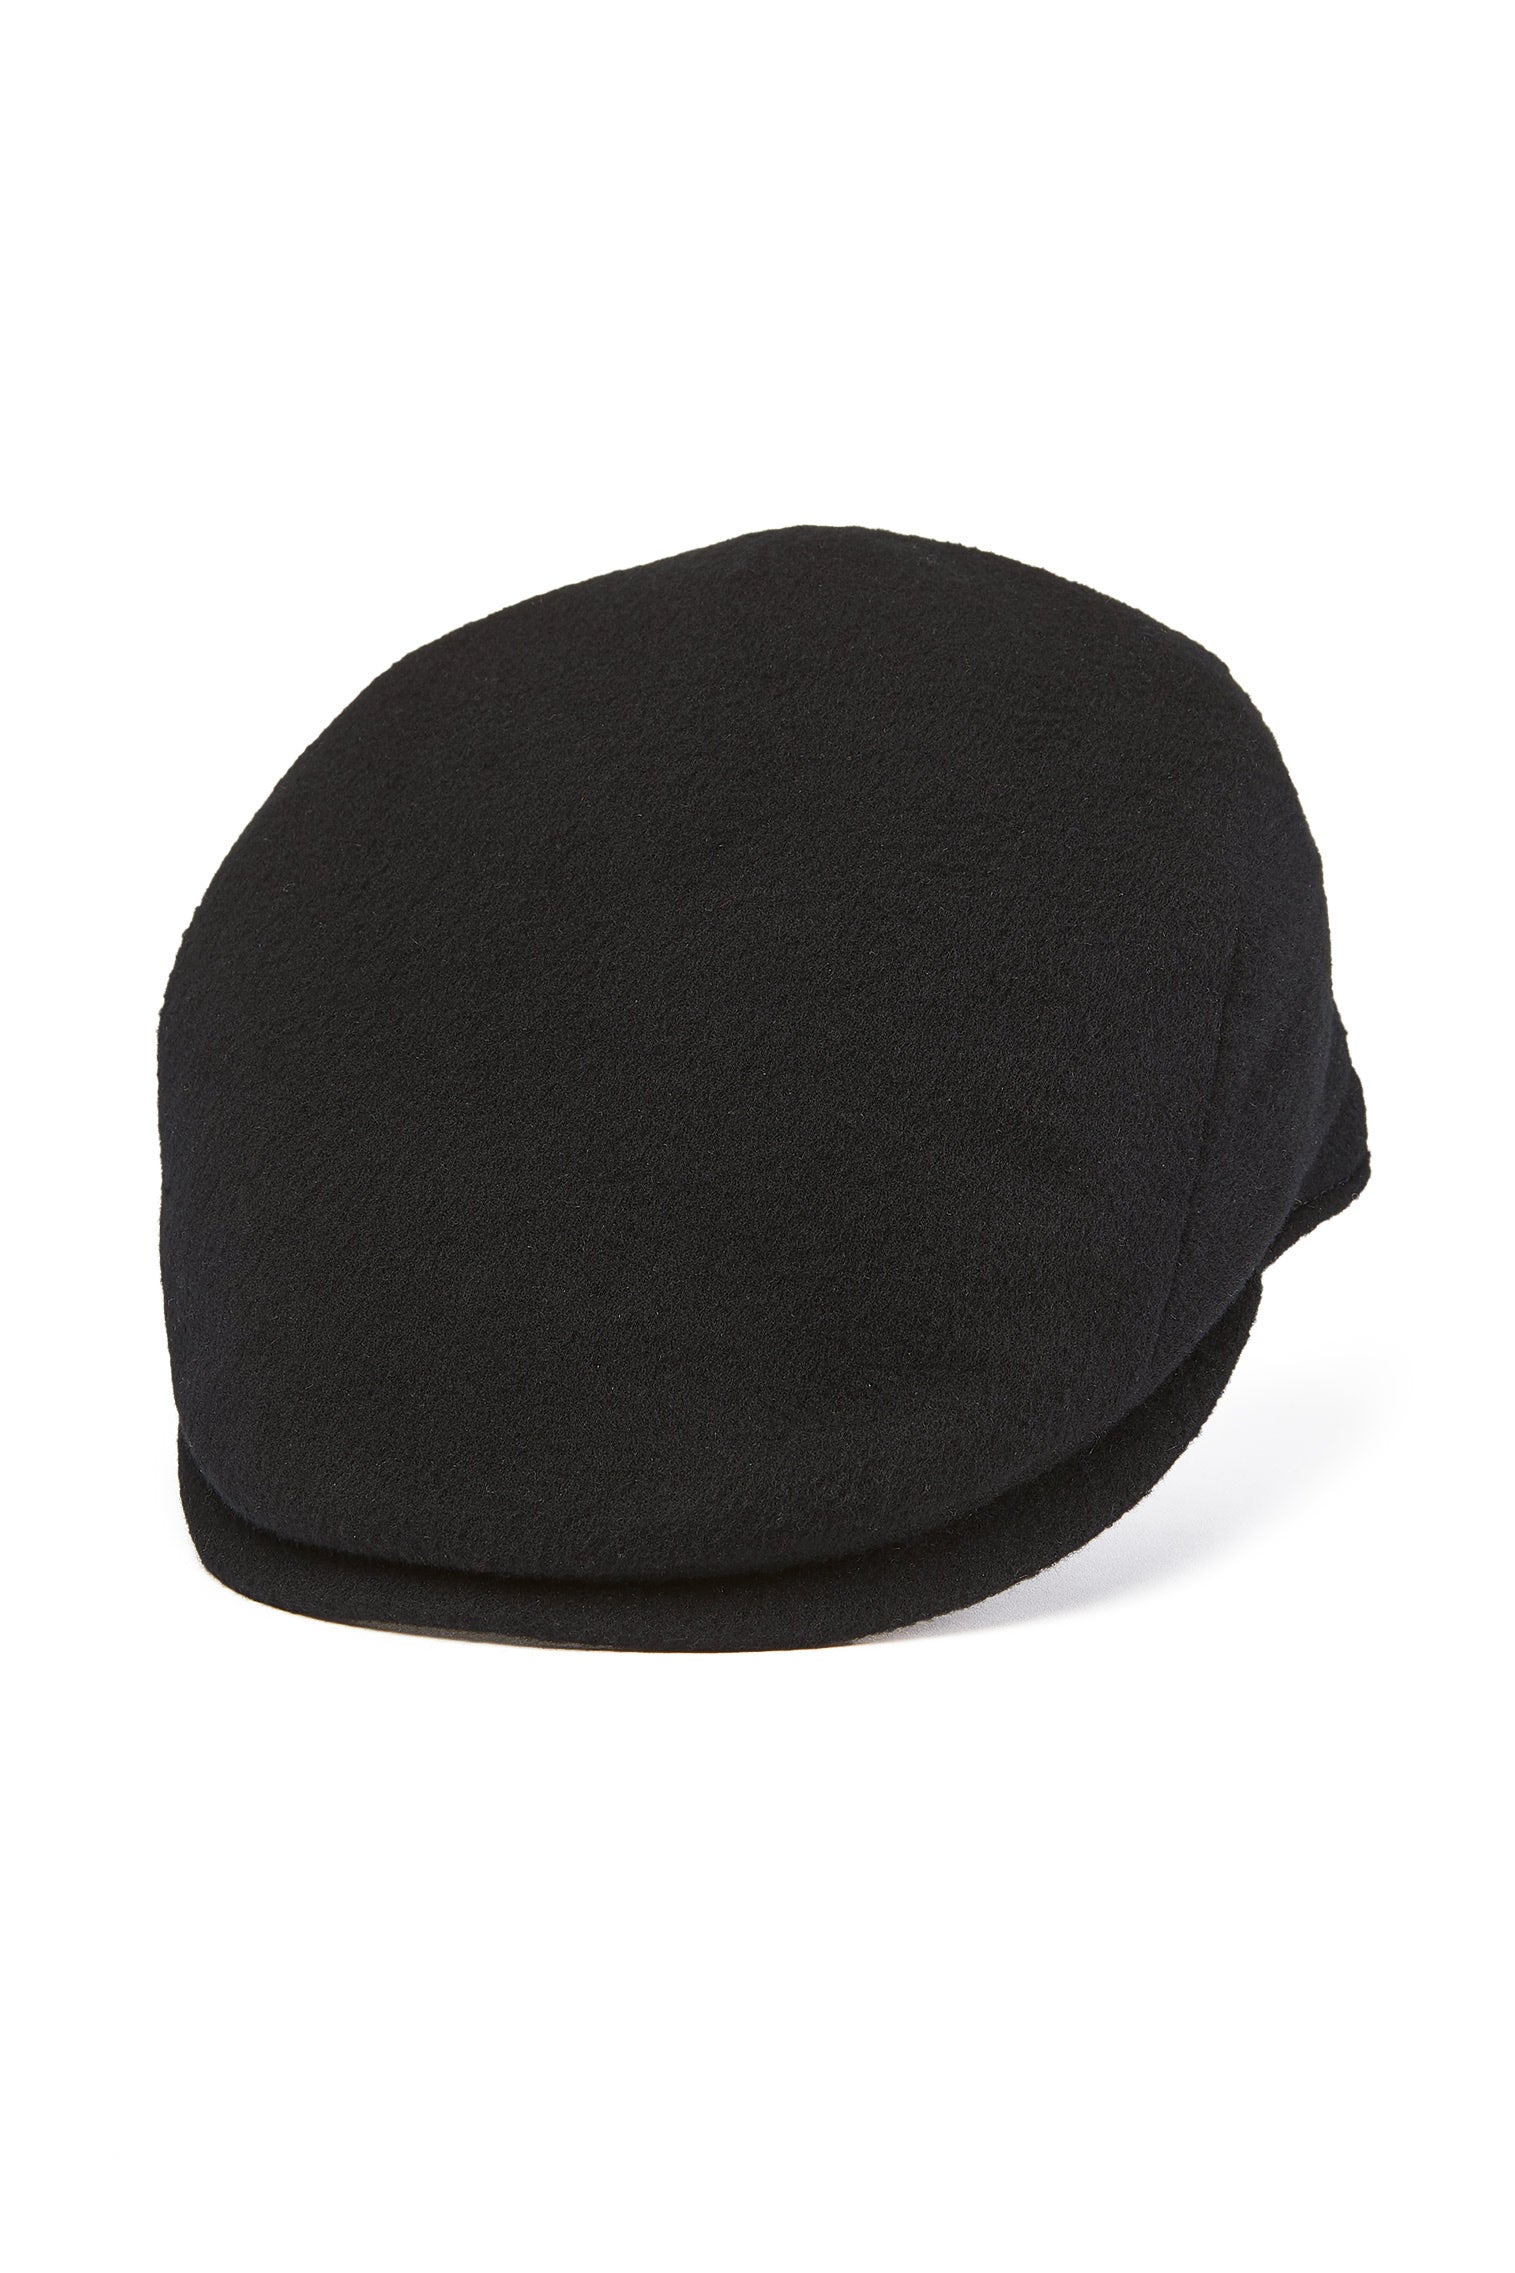 Escorial Wool Berkeley Flat Cap - Hats for Slimmer Frames - Lock & Co. Hatters London UK